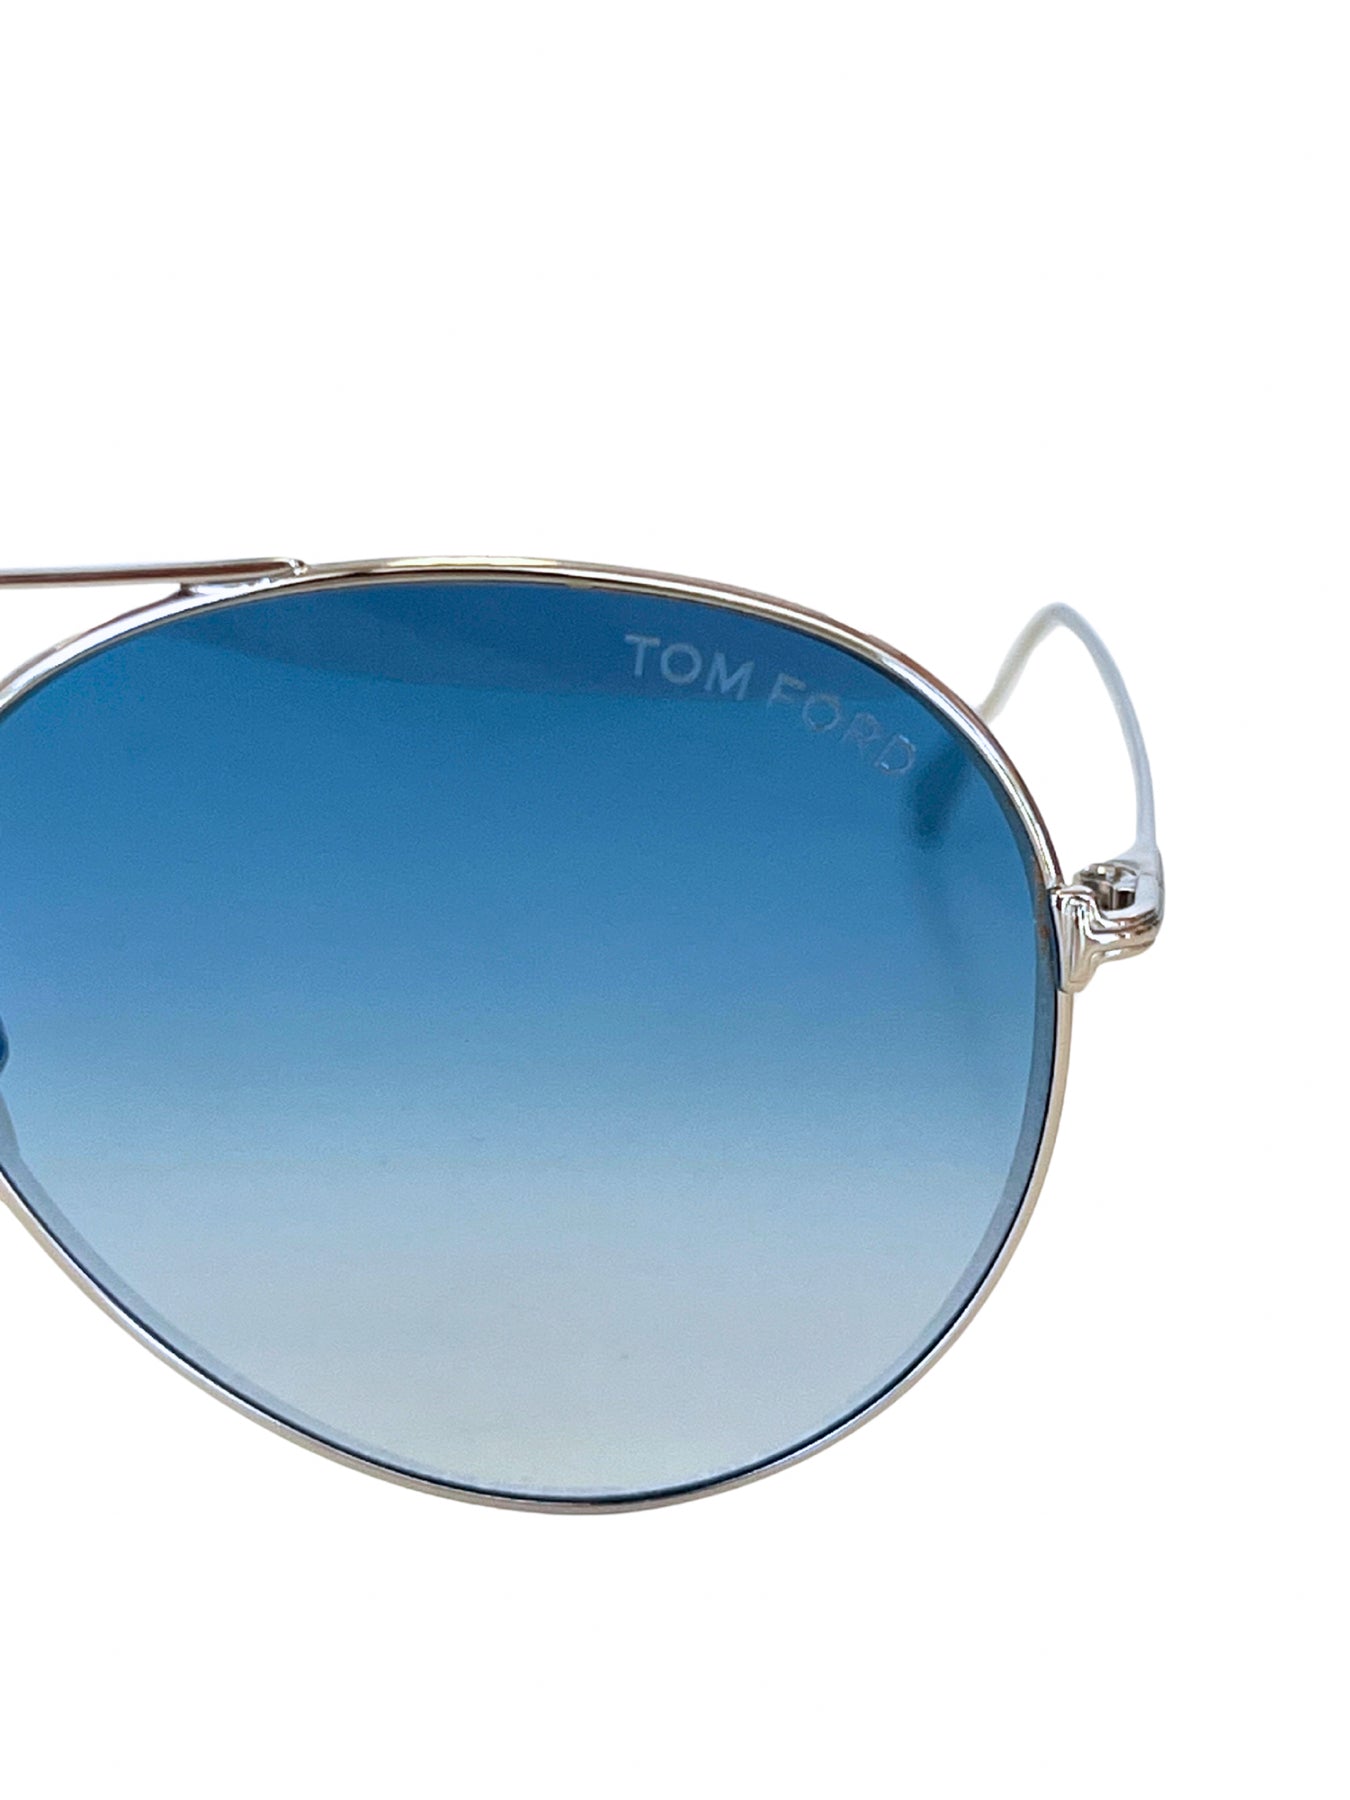 Tom Ford Ace2 Aviator Sunglasses